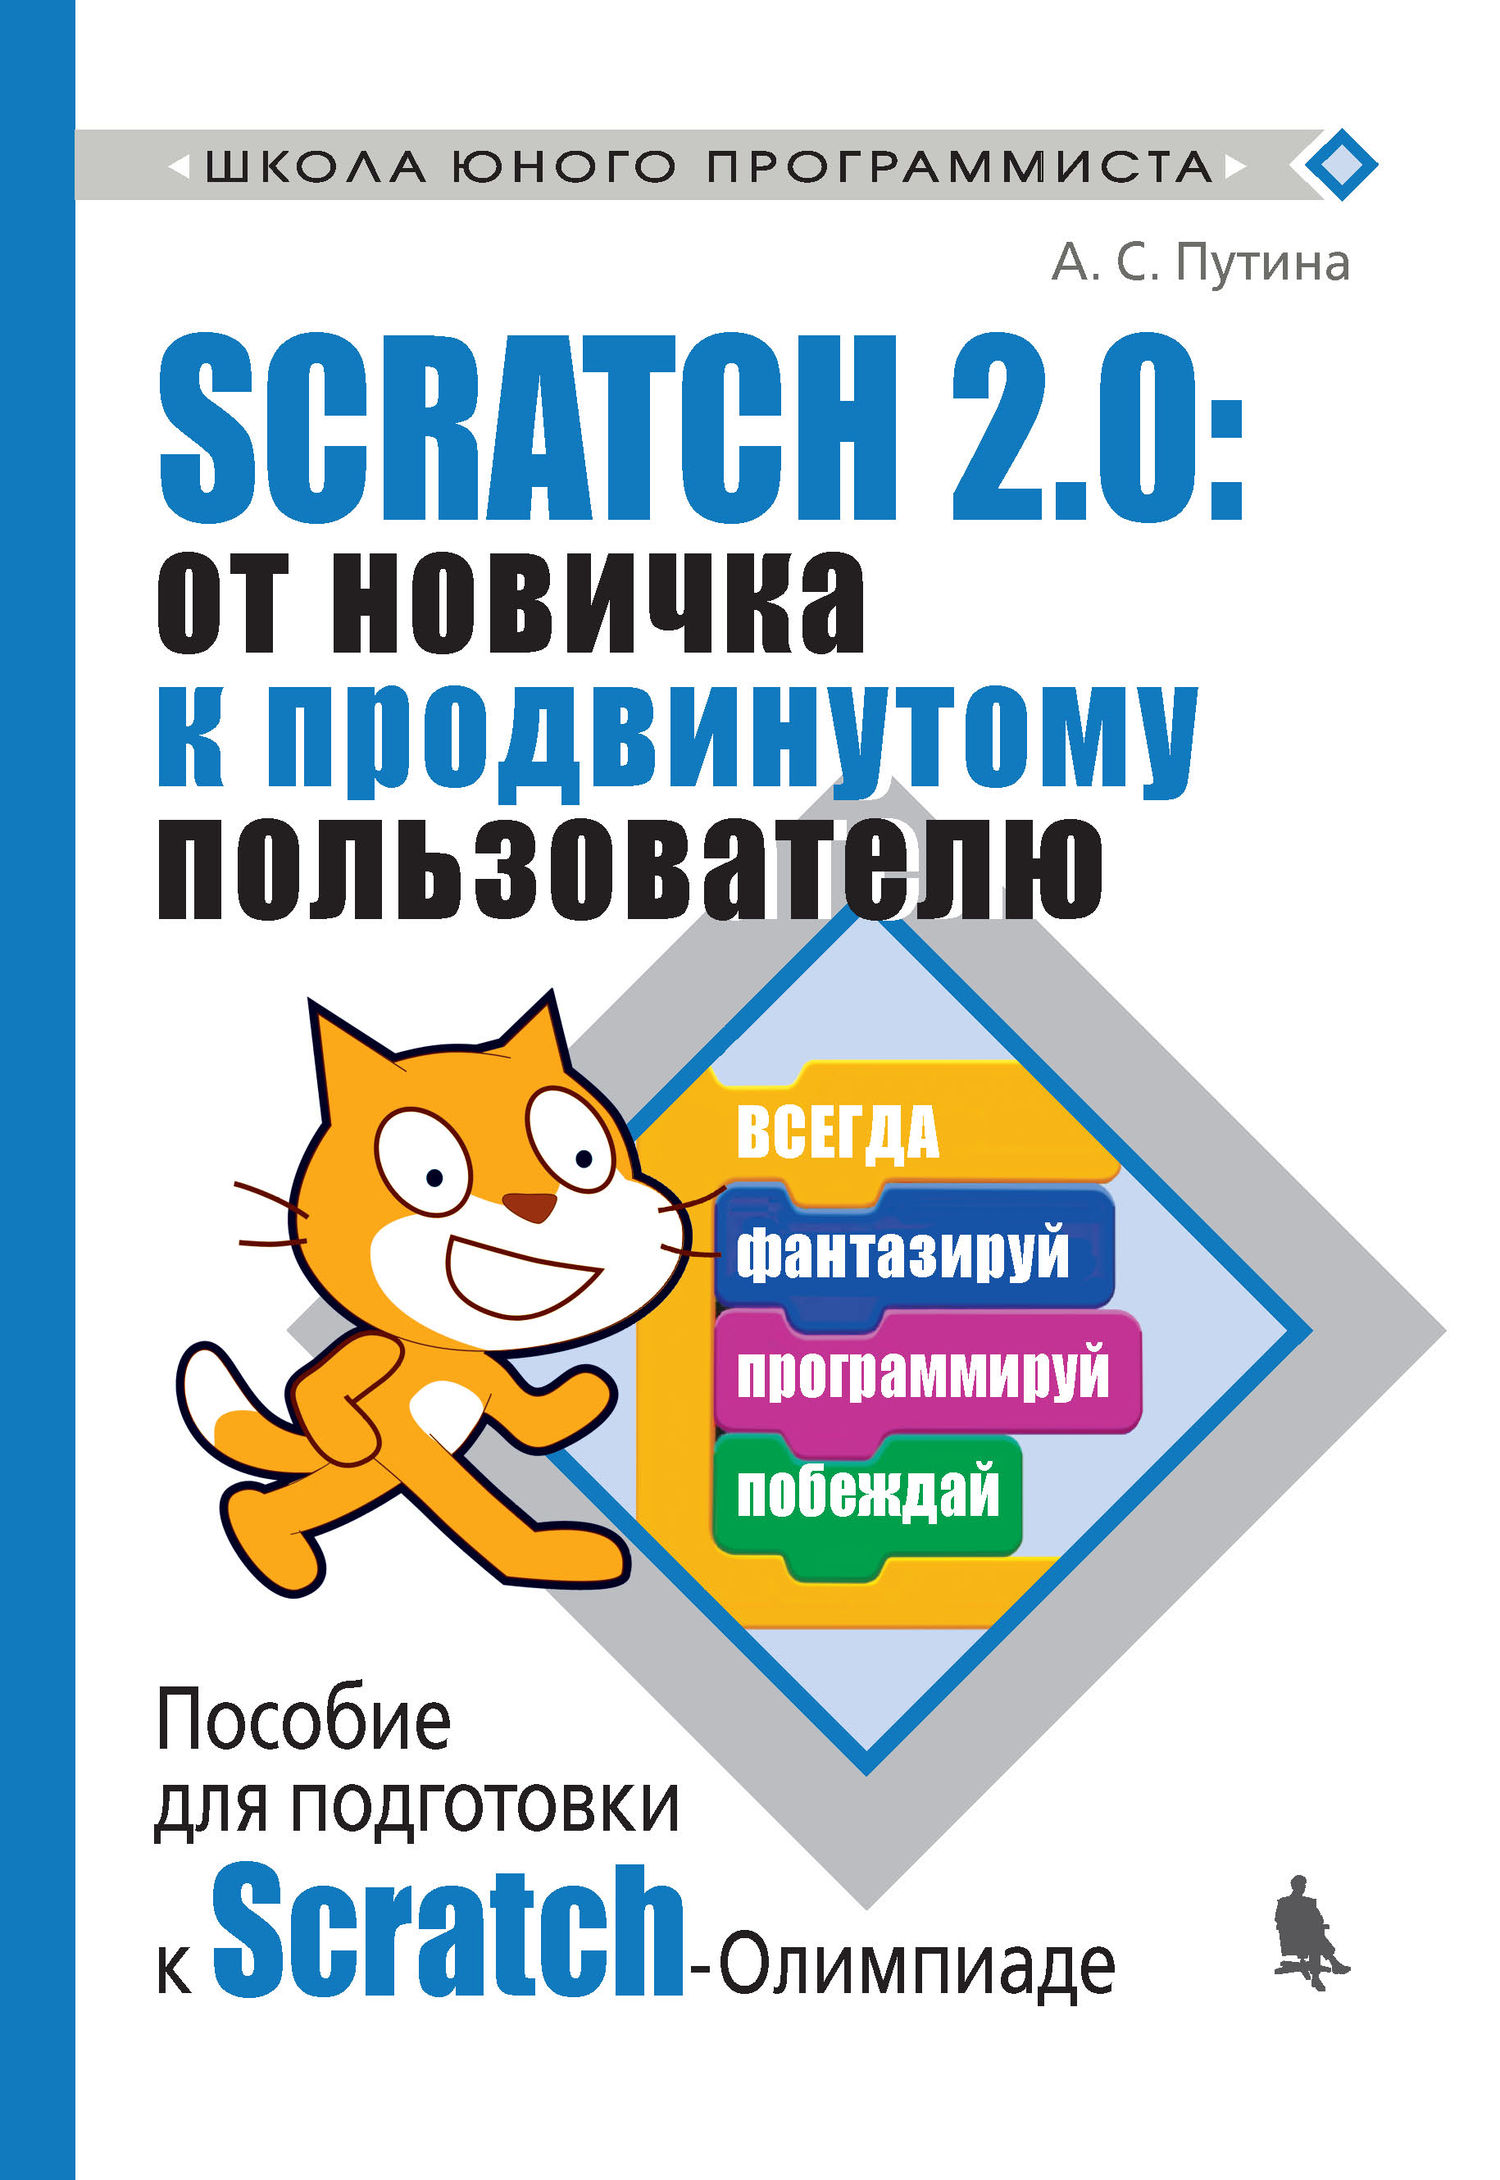 Книга Школа юного программиста Scratch 2.0: от новичка к продвинутому пользователю. Пособие для подготовки к Scratch-Олимпиаде созданная А. С. Путина может относится к жанру детская познавательная и развивающая литература, программирование. Стоимость электронной книги Scratch 2.0: от новичка к продвинутому пользователю. Пособие для подготовки к Scratch-Олимпиаде с идентификатором 38525687 составляет 242.00 руб.